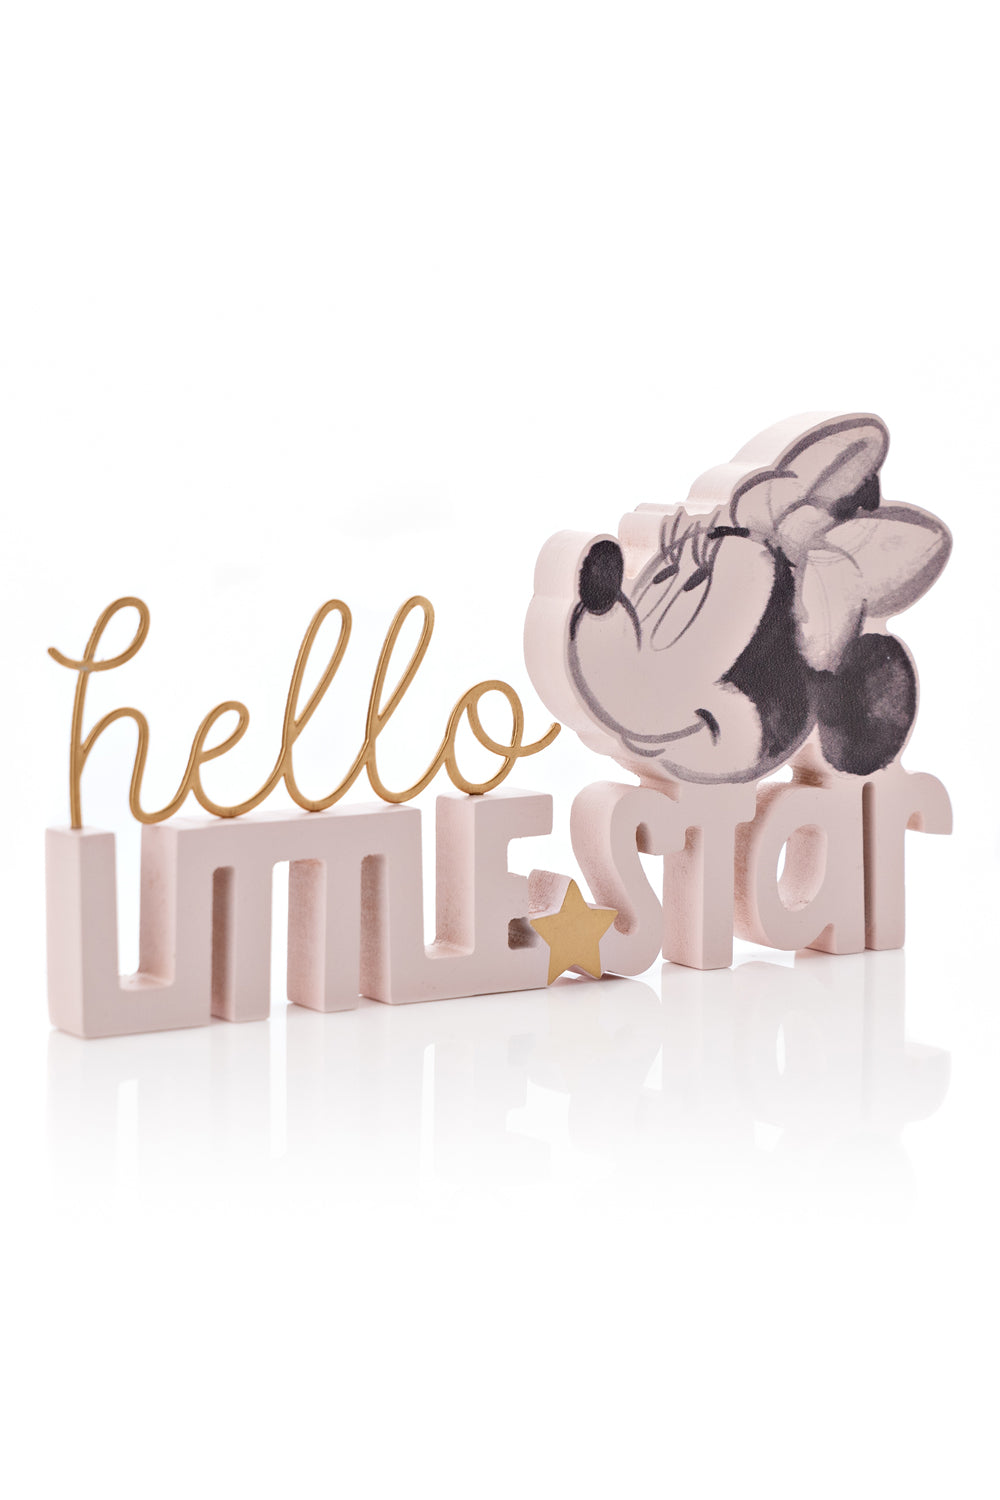 Disney Disney Minnie Hello Little Star Mantel Plaque Pink 3 Shaws Department Stores